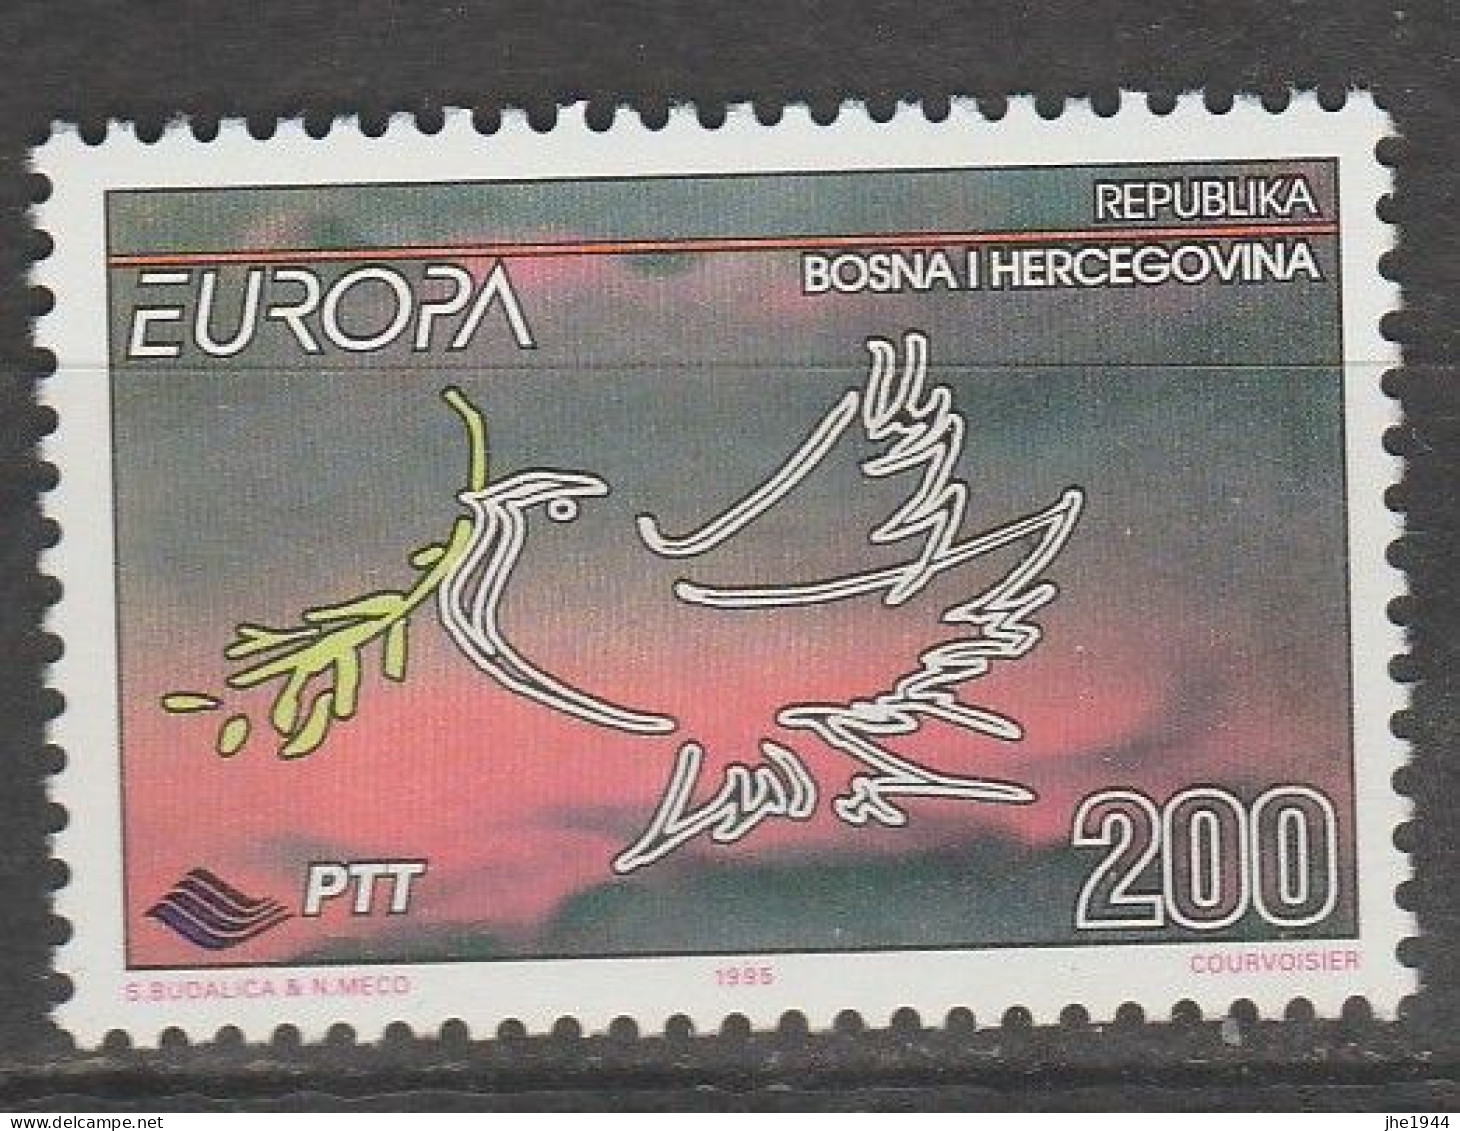 Europa 1995 Paix et Liberté Voir liste des timbres à vendre **